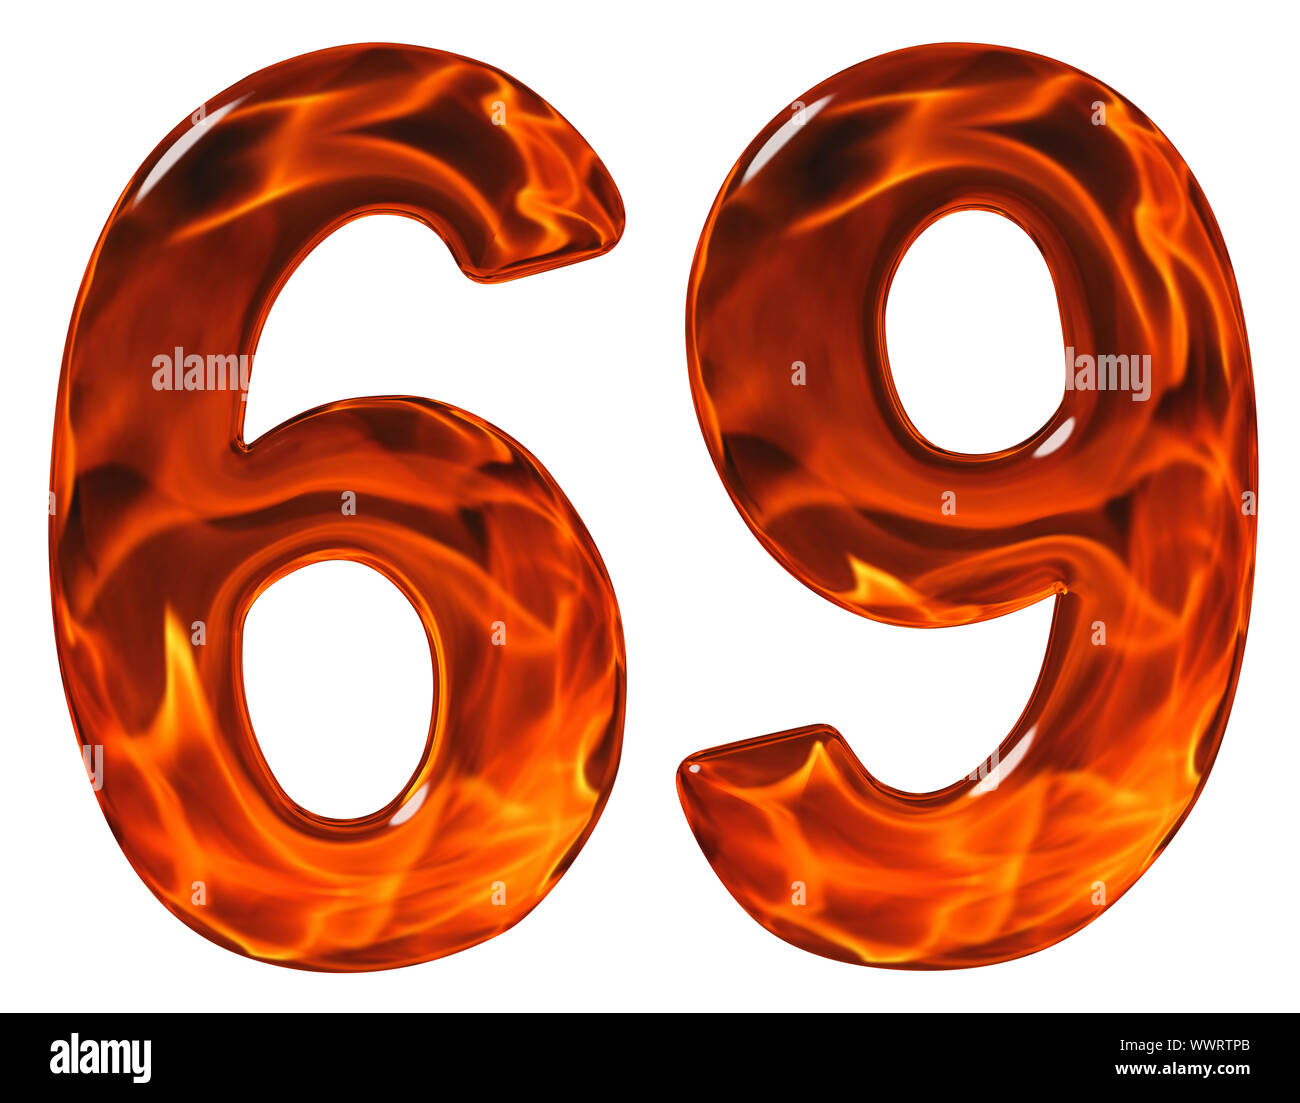 69, soixante-neuf, le chiffre, l'imitation en verre et un feu ardent, isolé sur fond blanc Banque D'Images